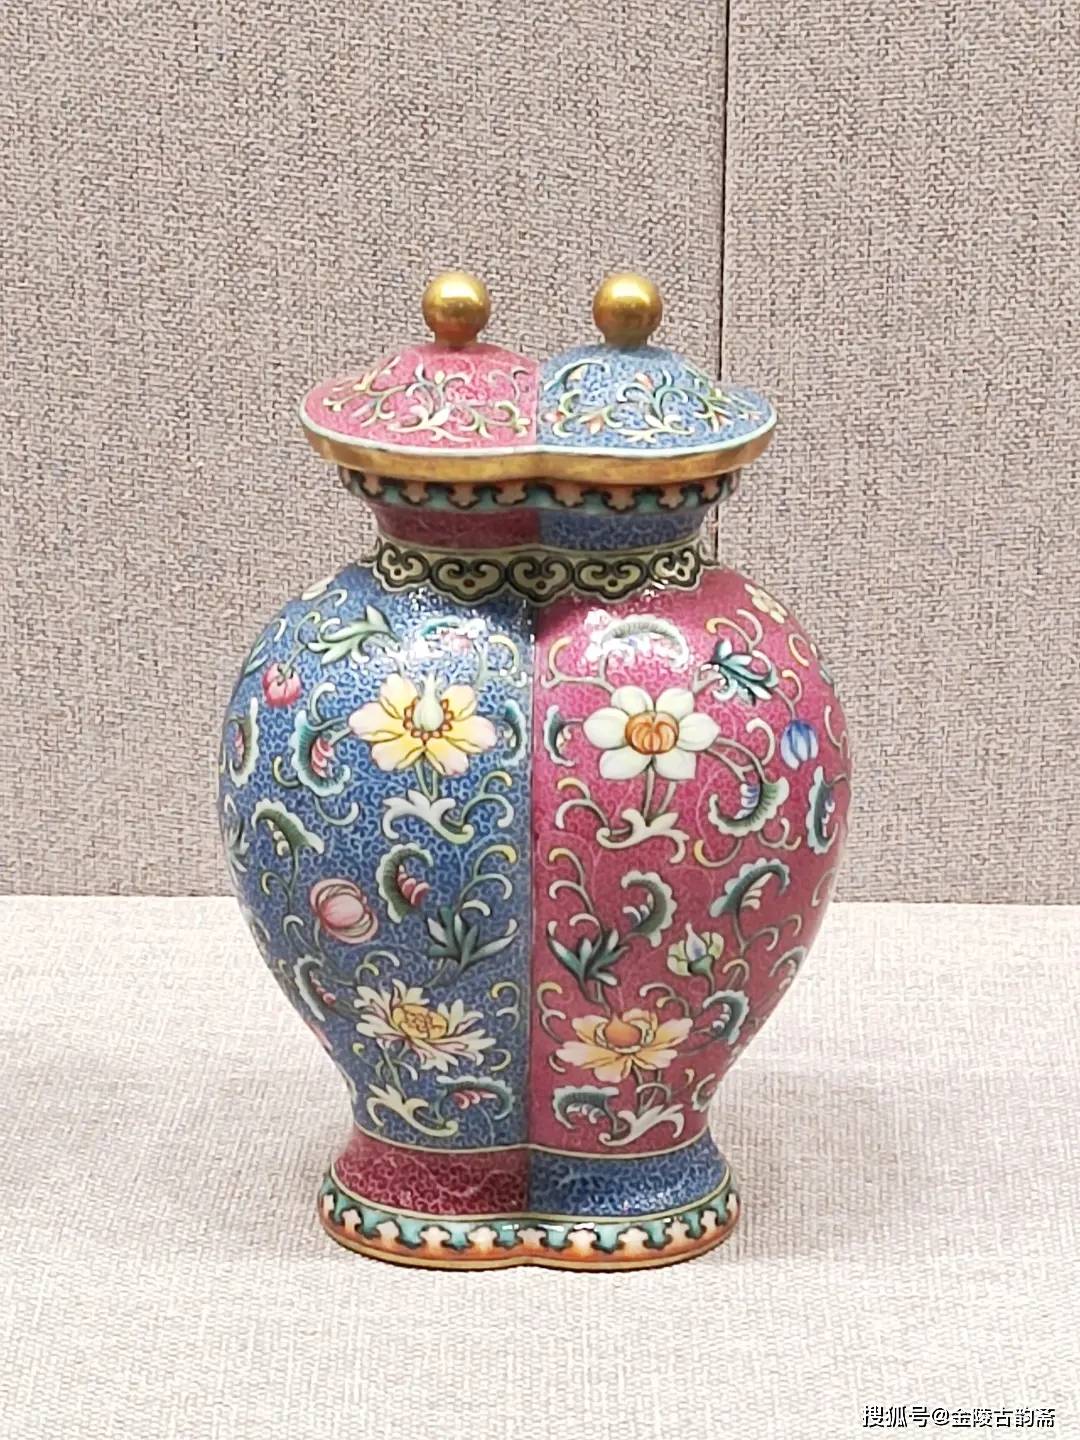 北京故宫博物院——武英殿陶瓷博物馆精品鉴赏